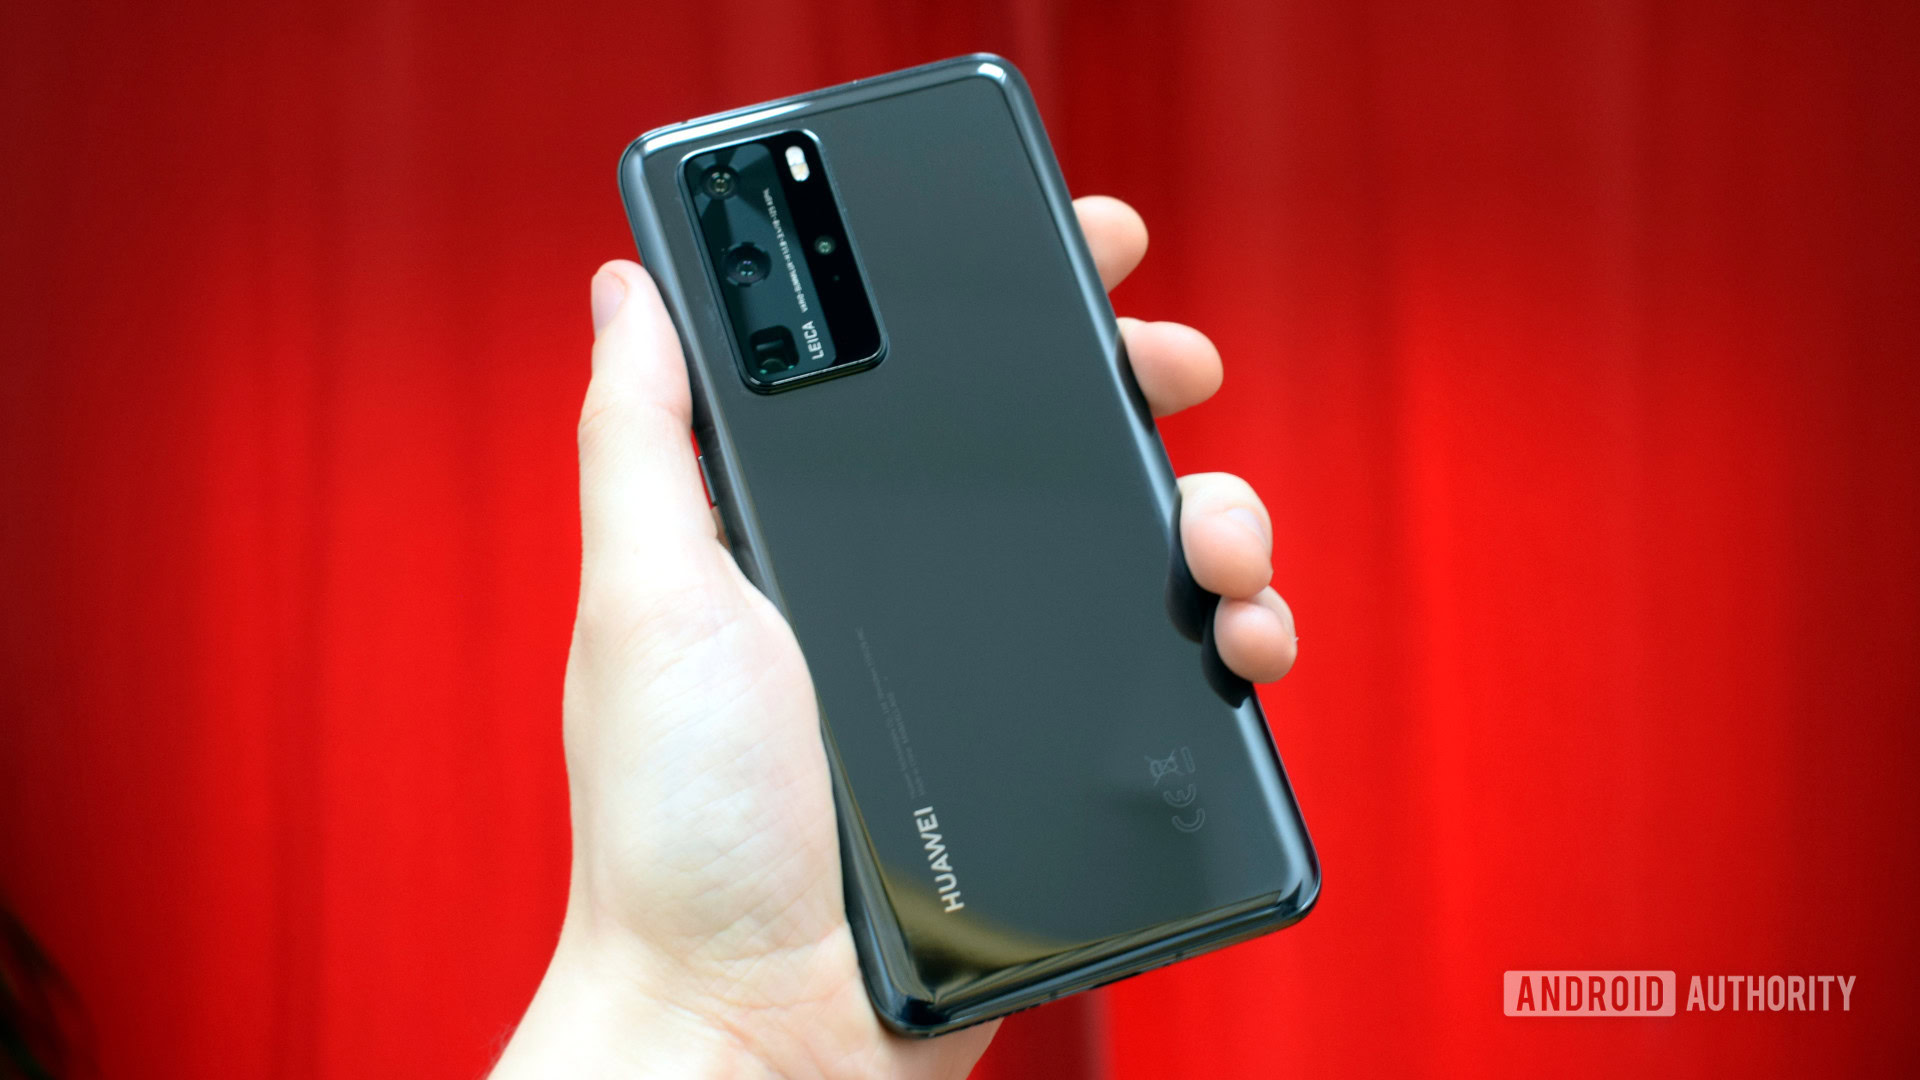 Huawei P40 review